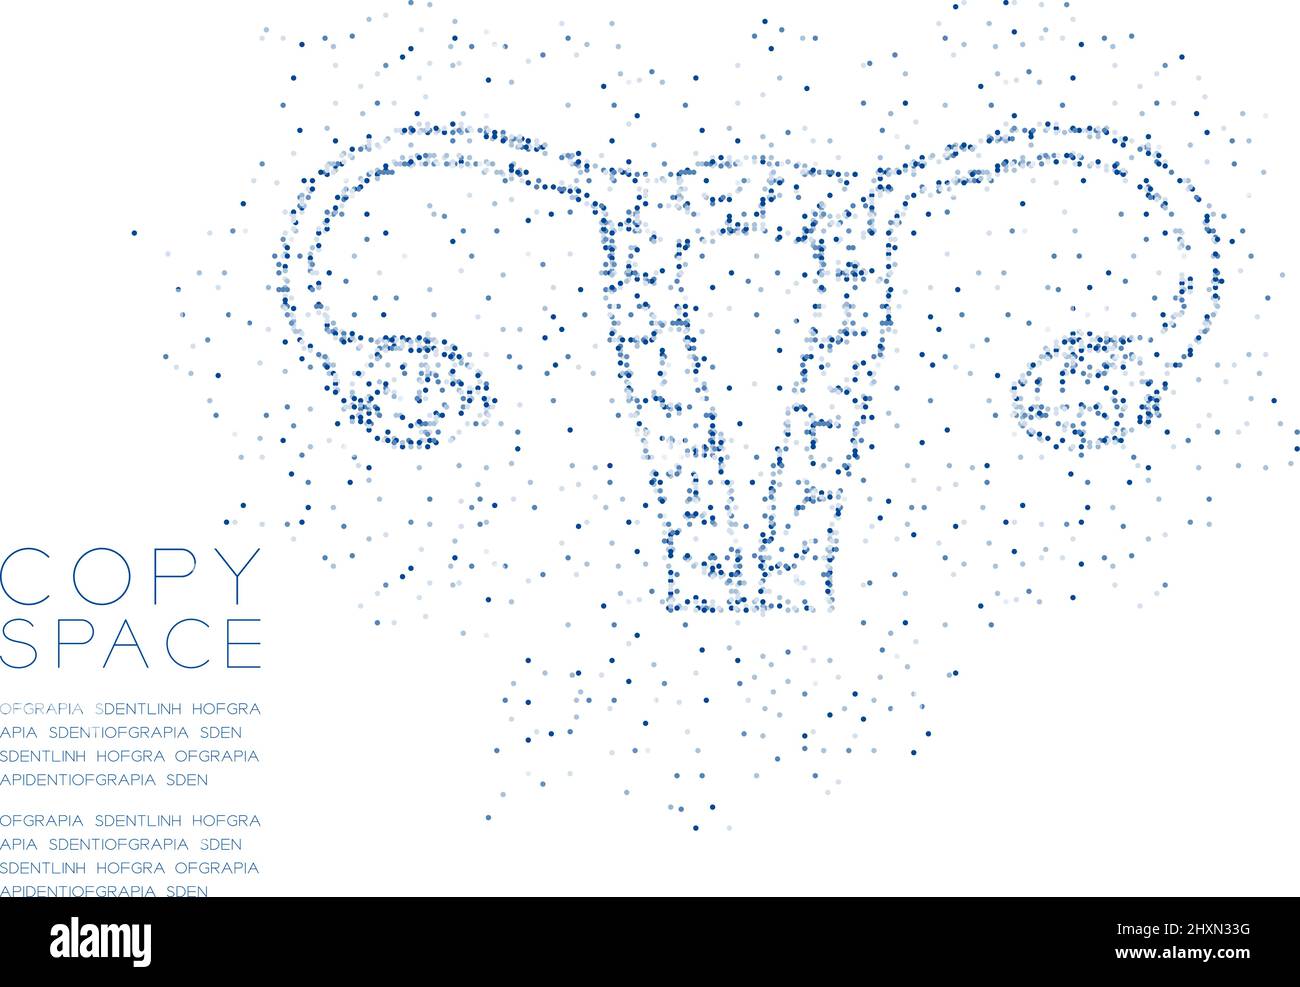 Forme de l'ovaire et de l'utérus Résumé cercle géométrique point pixel motif, science médicale concept d'organe dessin de couleur bleue illustration isolée sur bac blanc Illustration de Vecteur